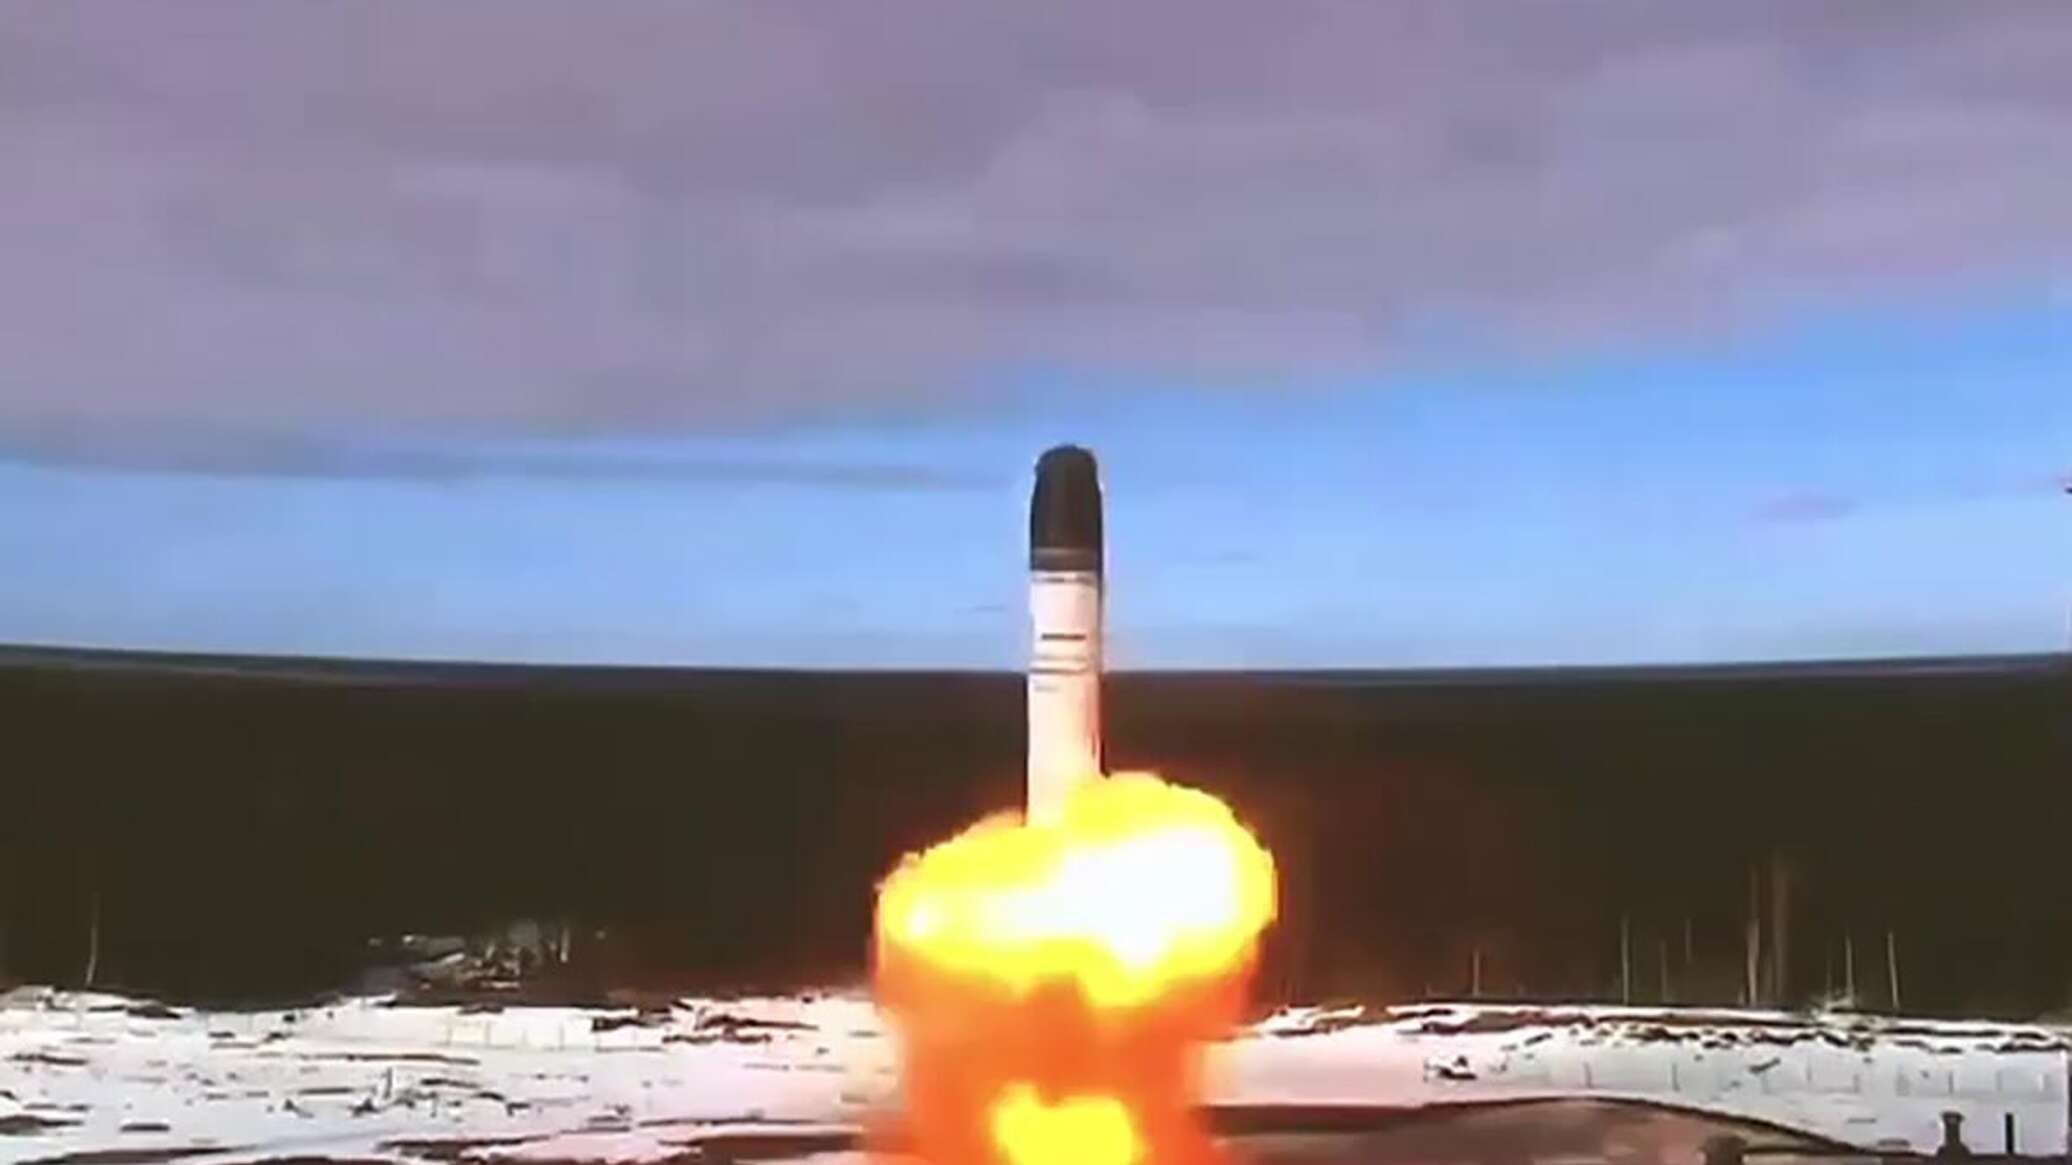 صاروخ "سارمات" العابر للقارات يتموضع في مكان استراتيجي جديد